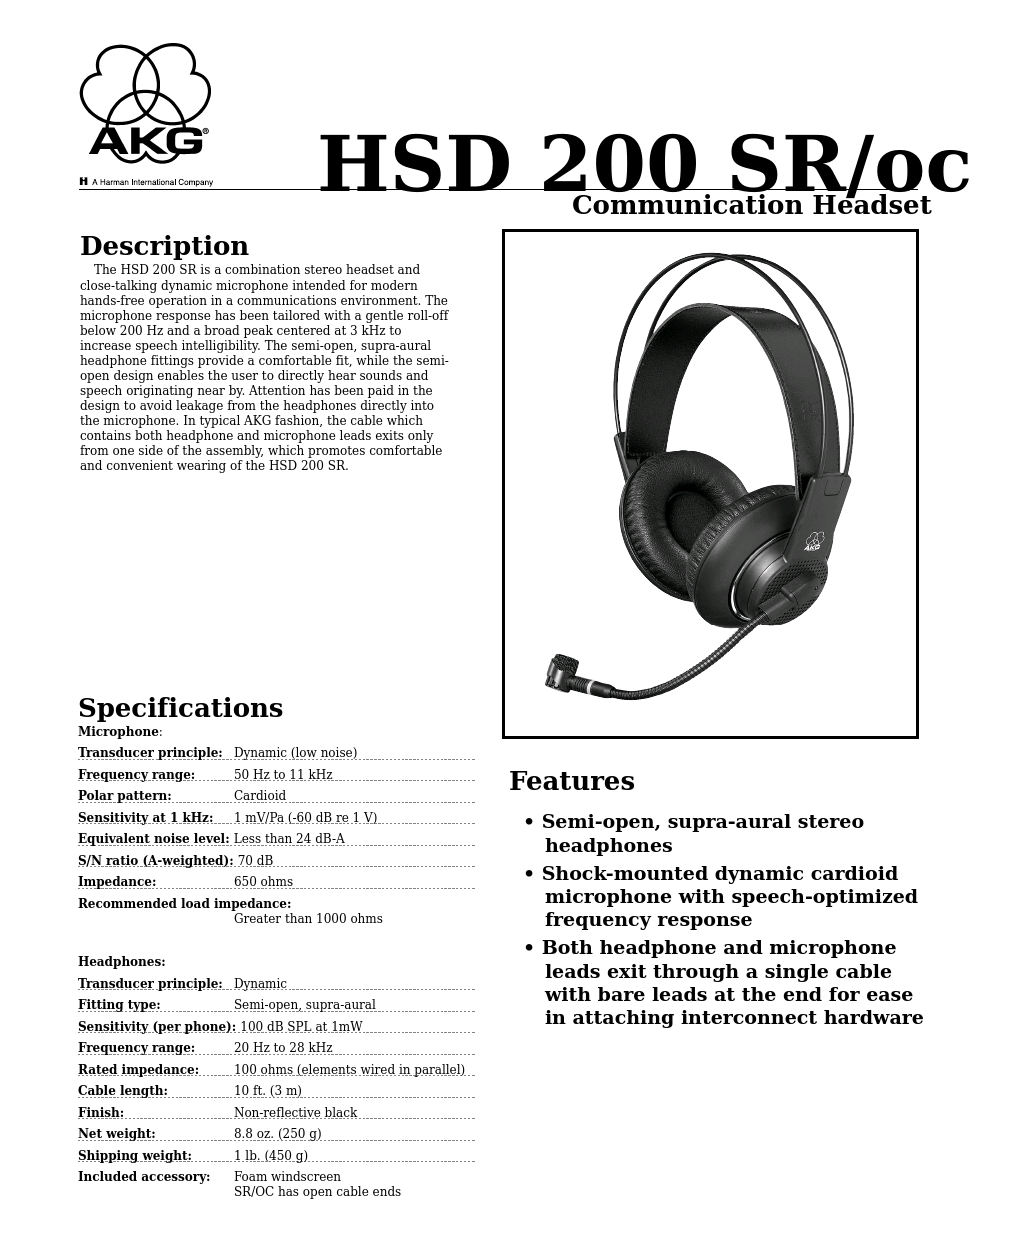 HSD 200 SR/oc